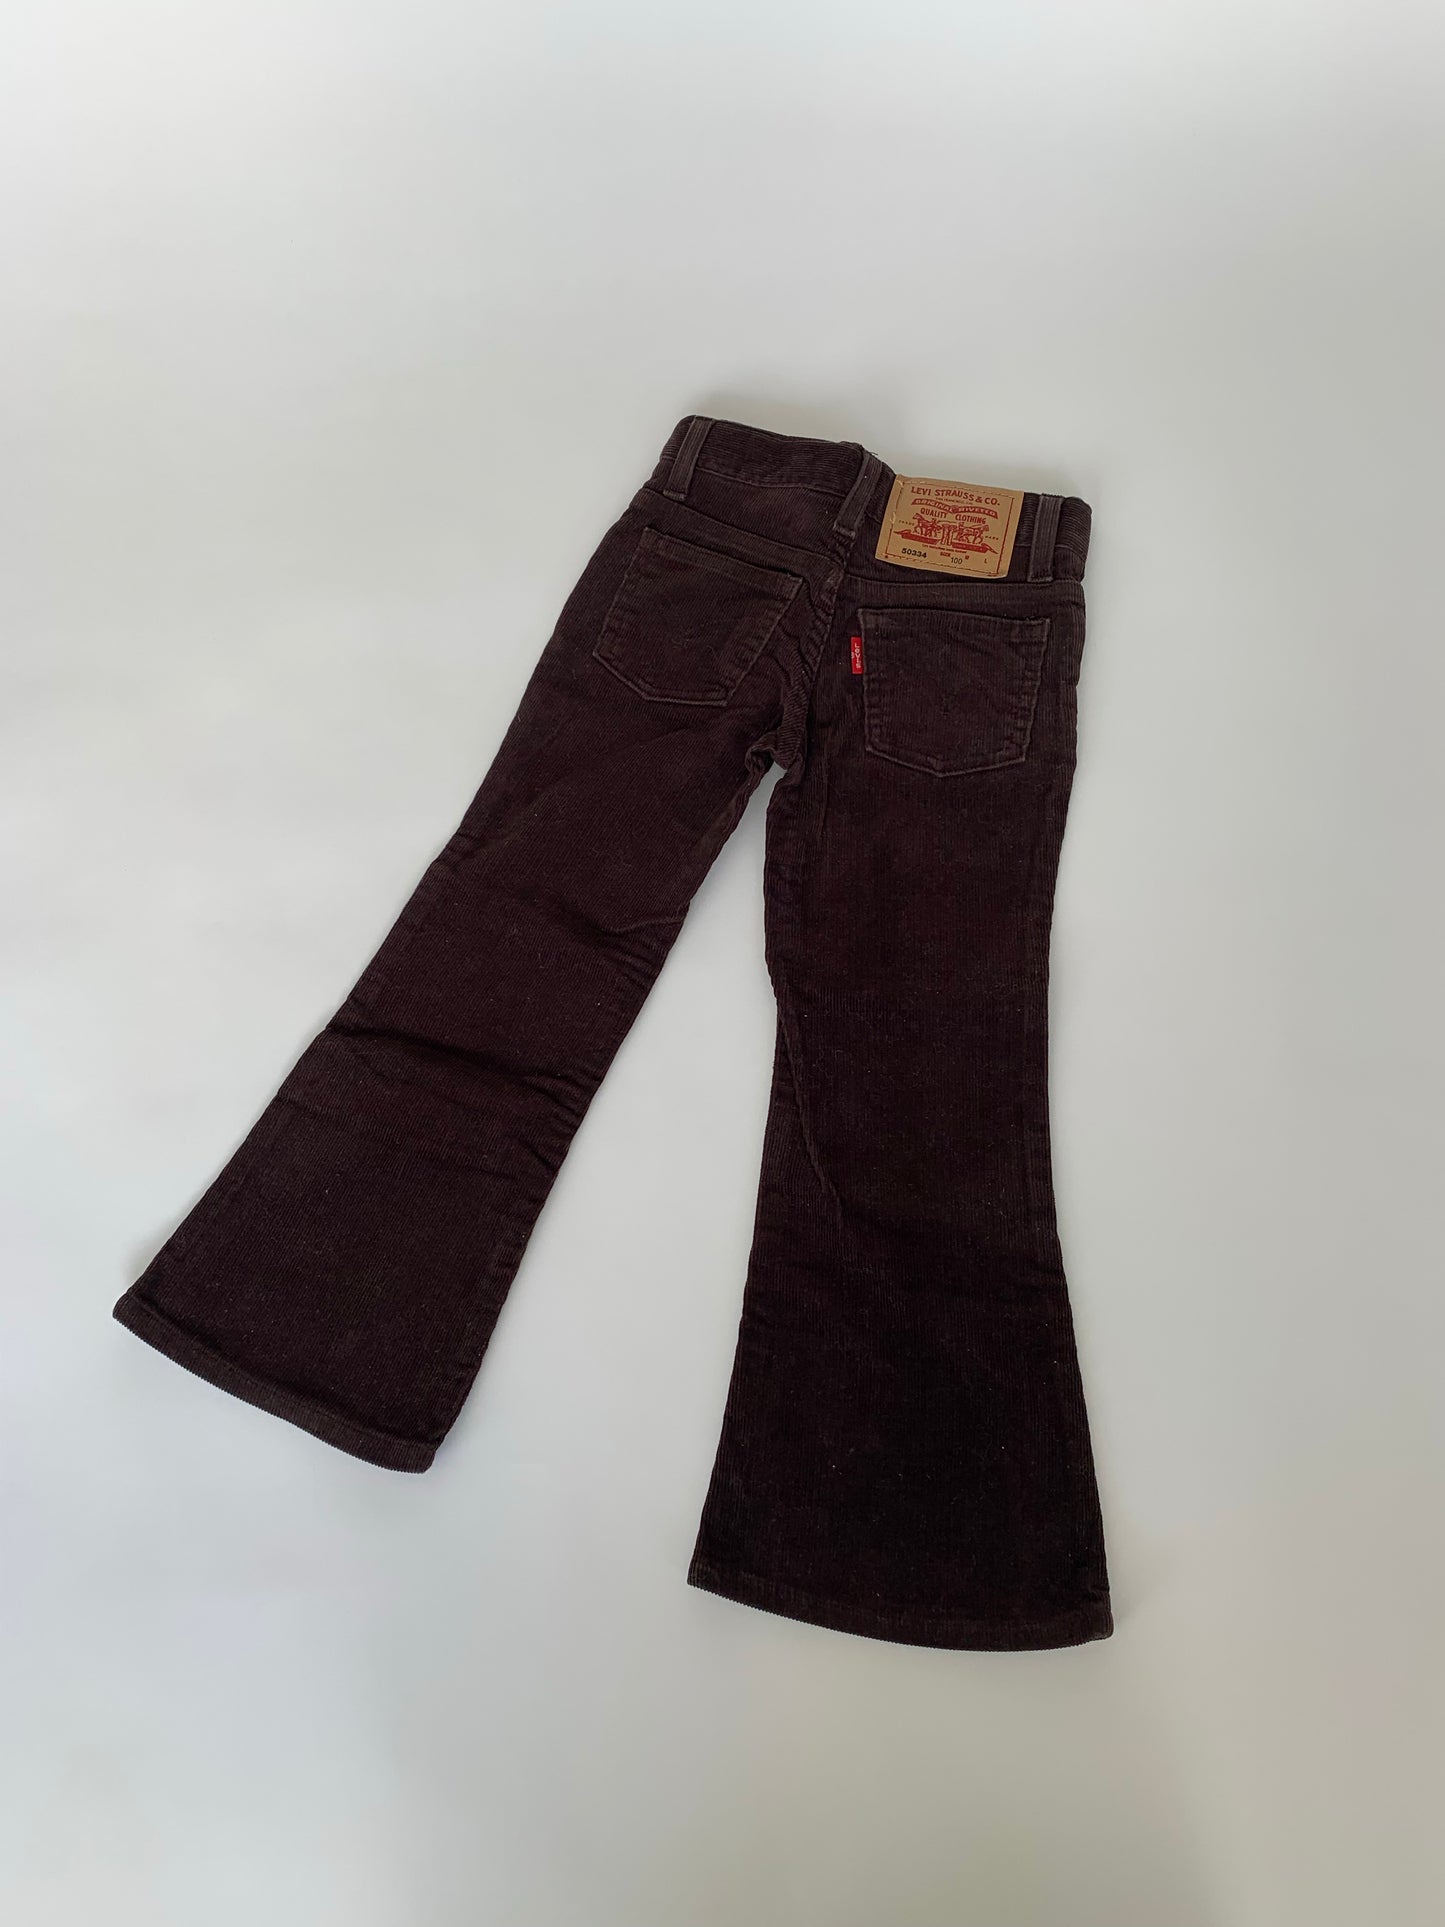 Levi’s Brown Corduroy Pants Regular/4-5Y (vintage)